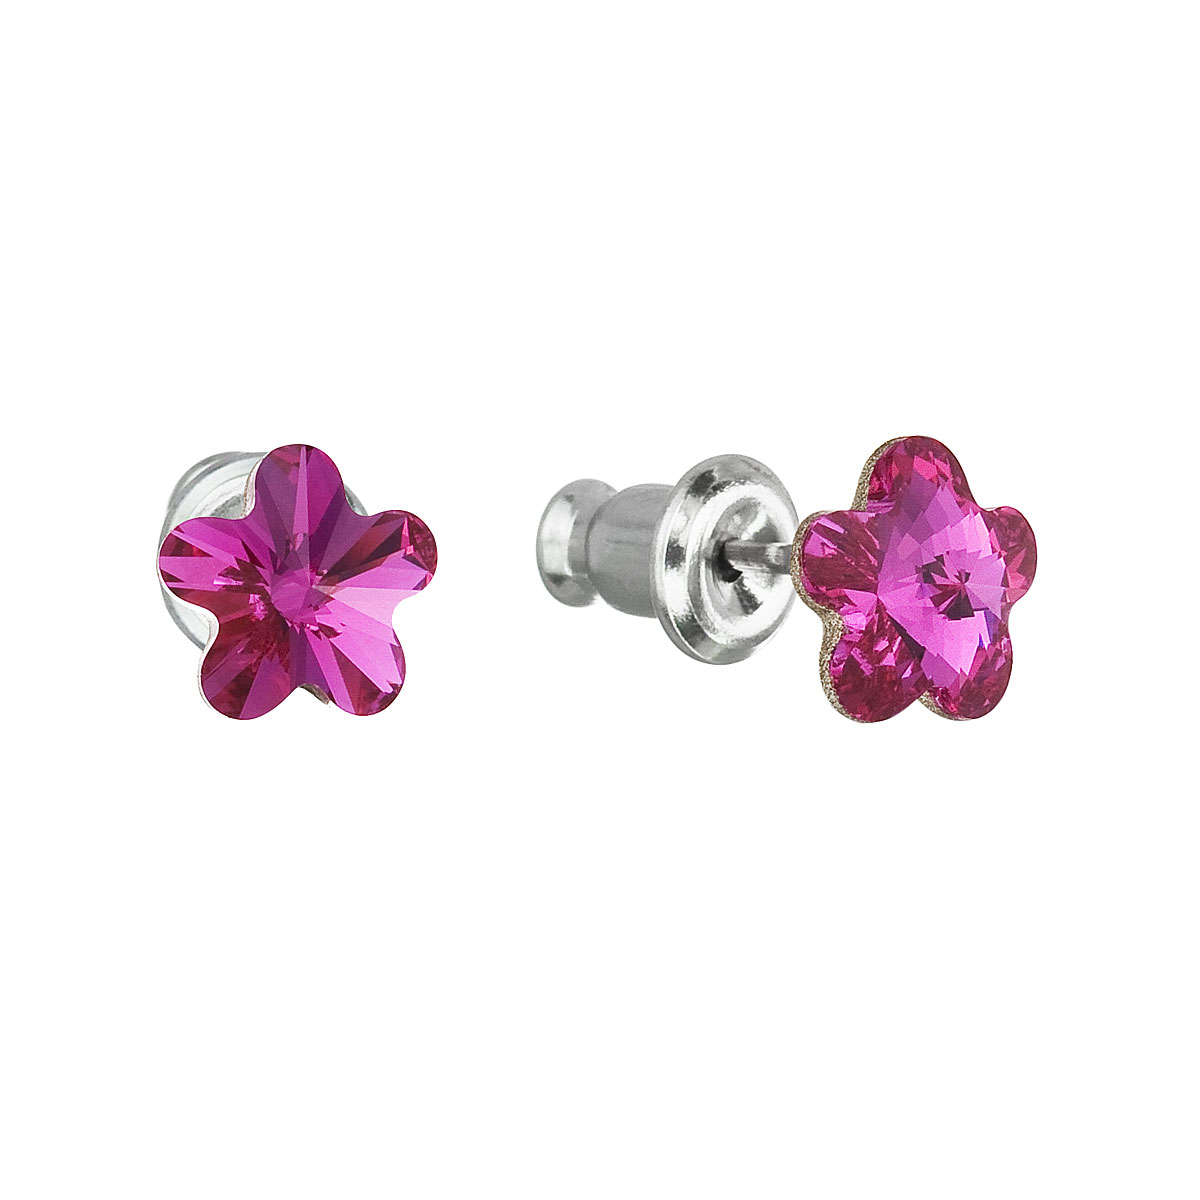 Evolution Group Náušnice bižuterie se Swarovski krystaly růžová kytička 51051.3 fuchsia